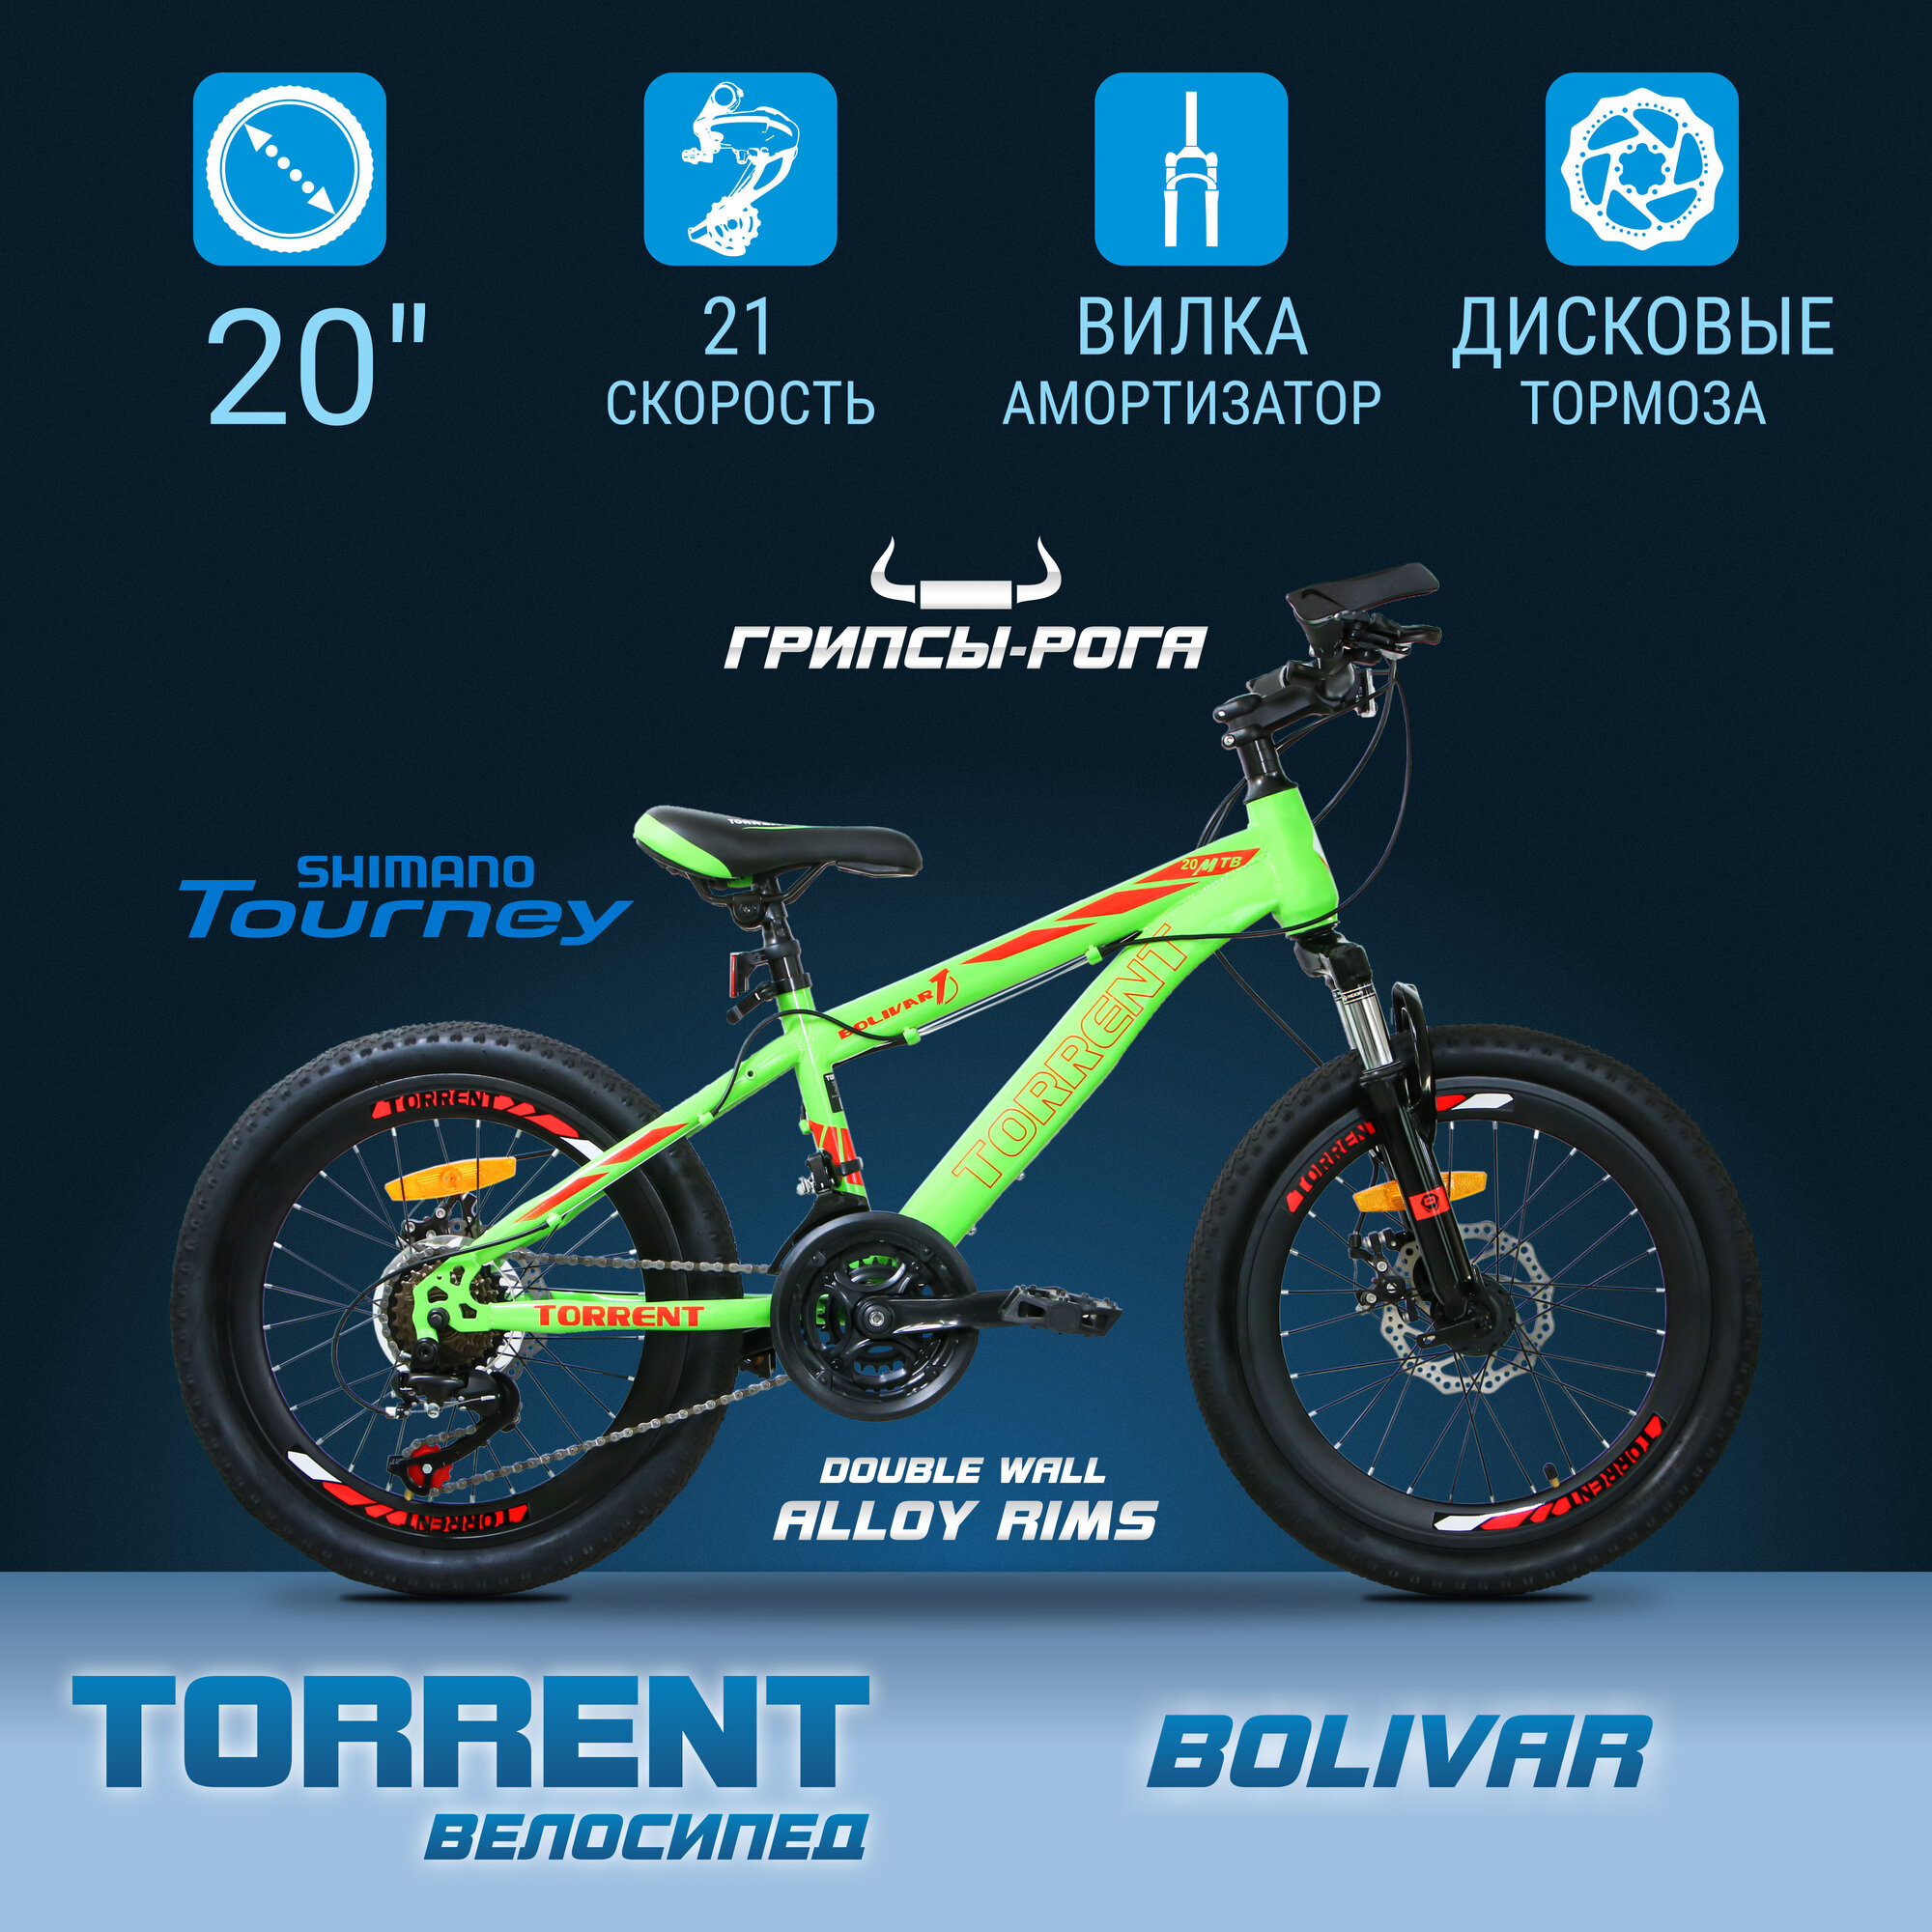 Велосипед TORRENT Bolivar (рама сталь 10" подростковый 21 скорость колеса 20д.)